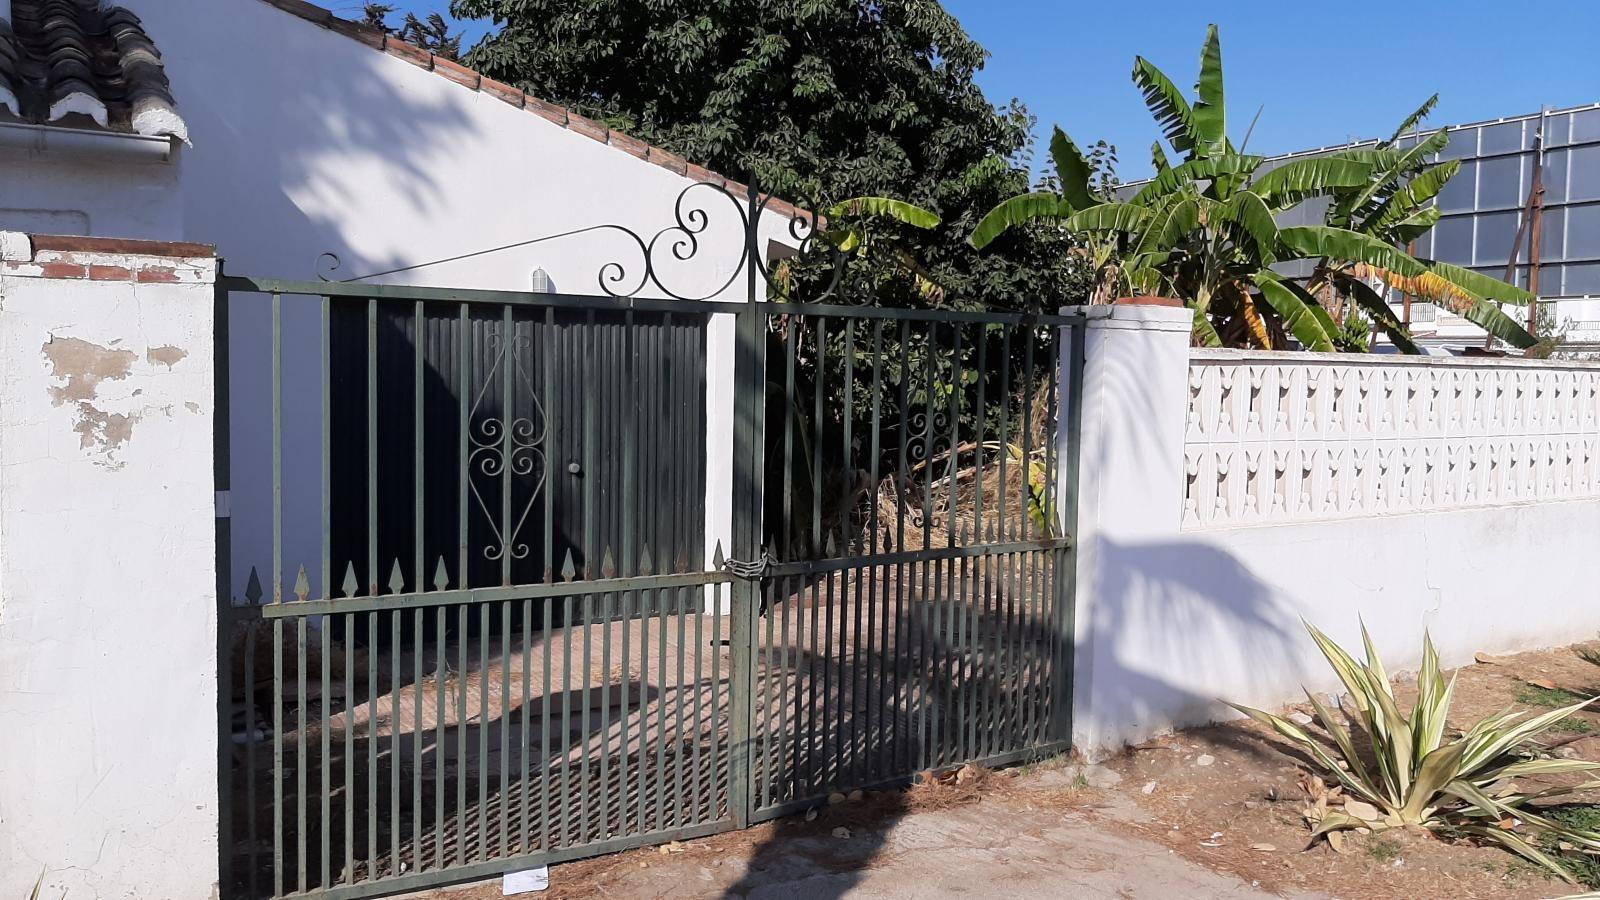 Perceel en centraal gelegen huis aan Andalucia Avenue TE BOUWEN ONDER + 3